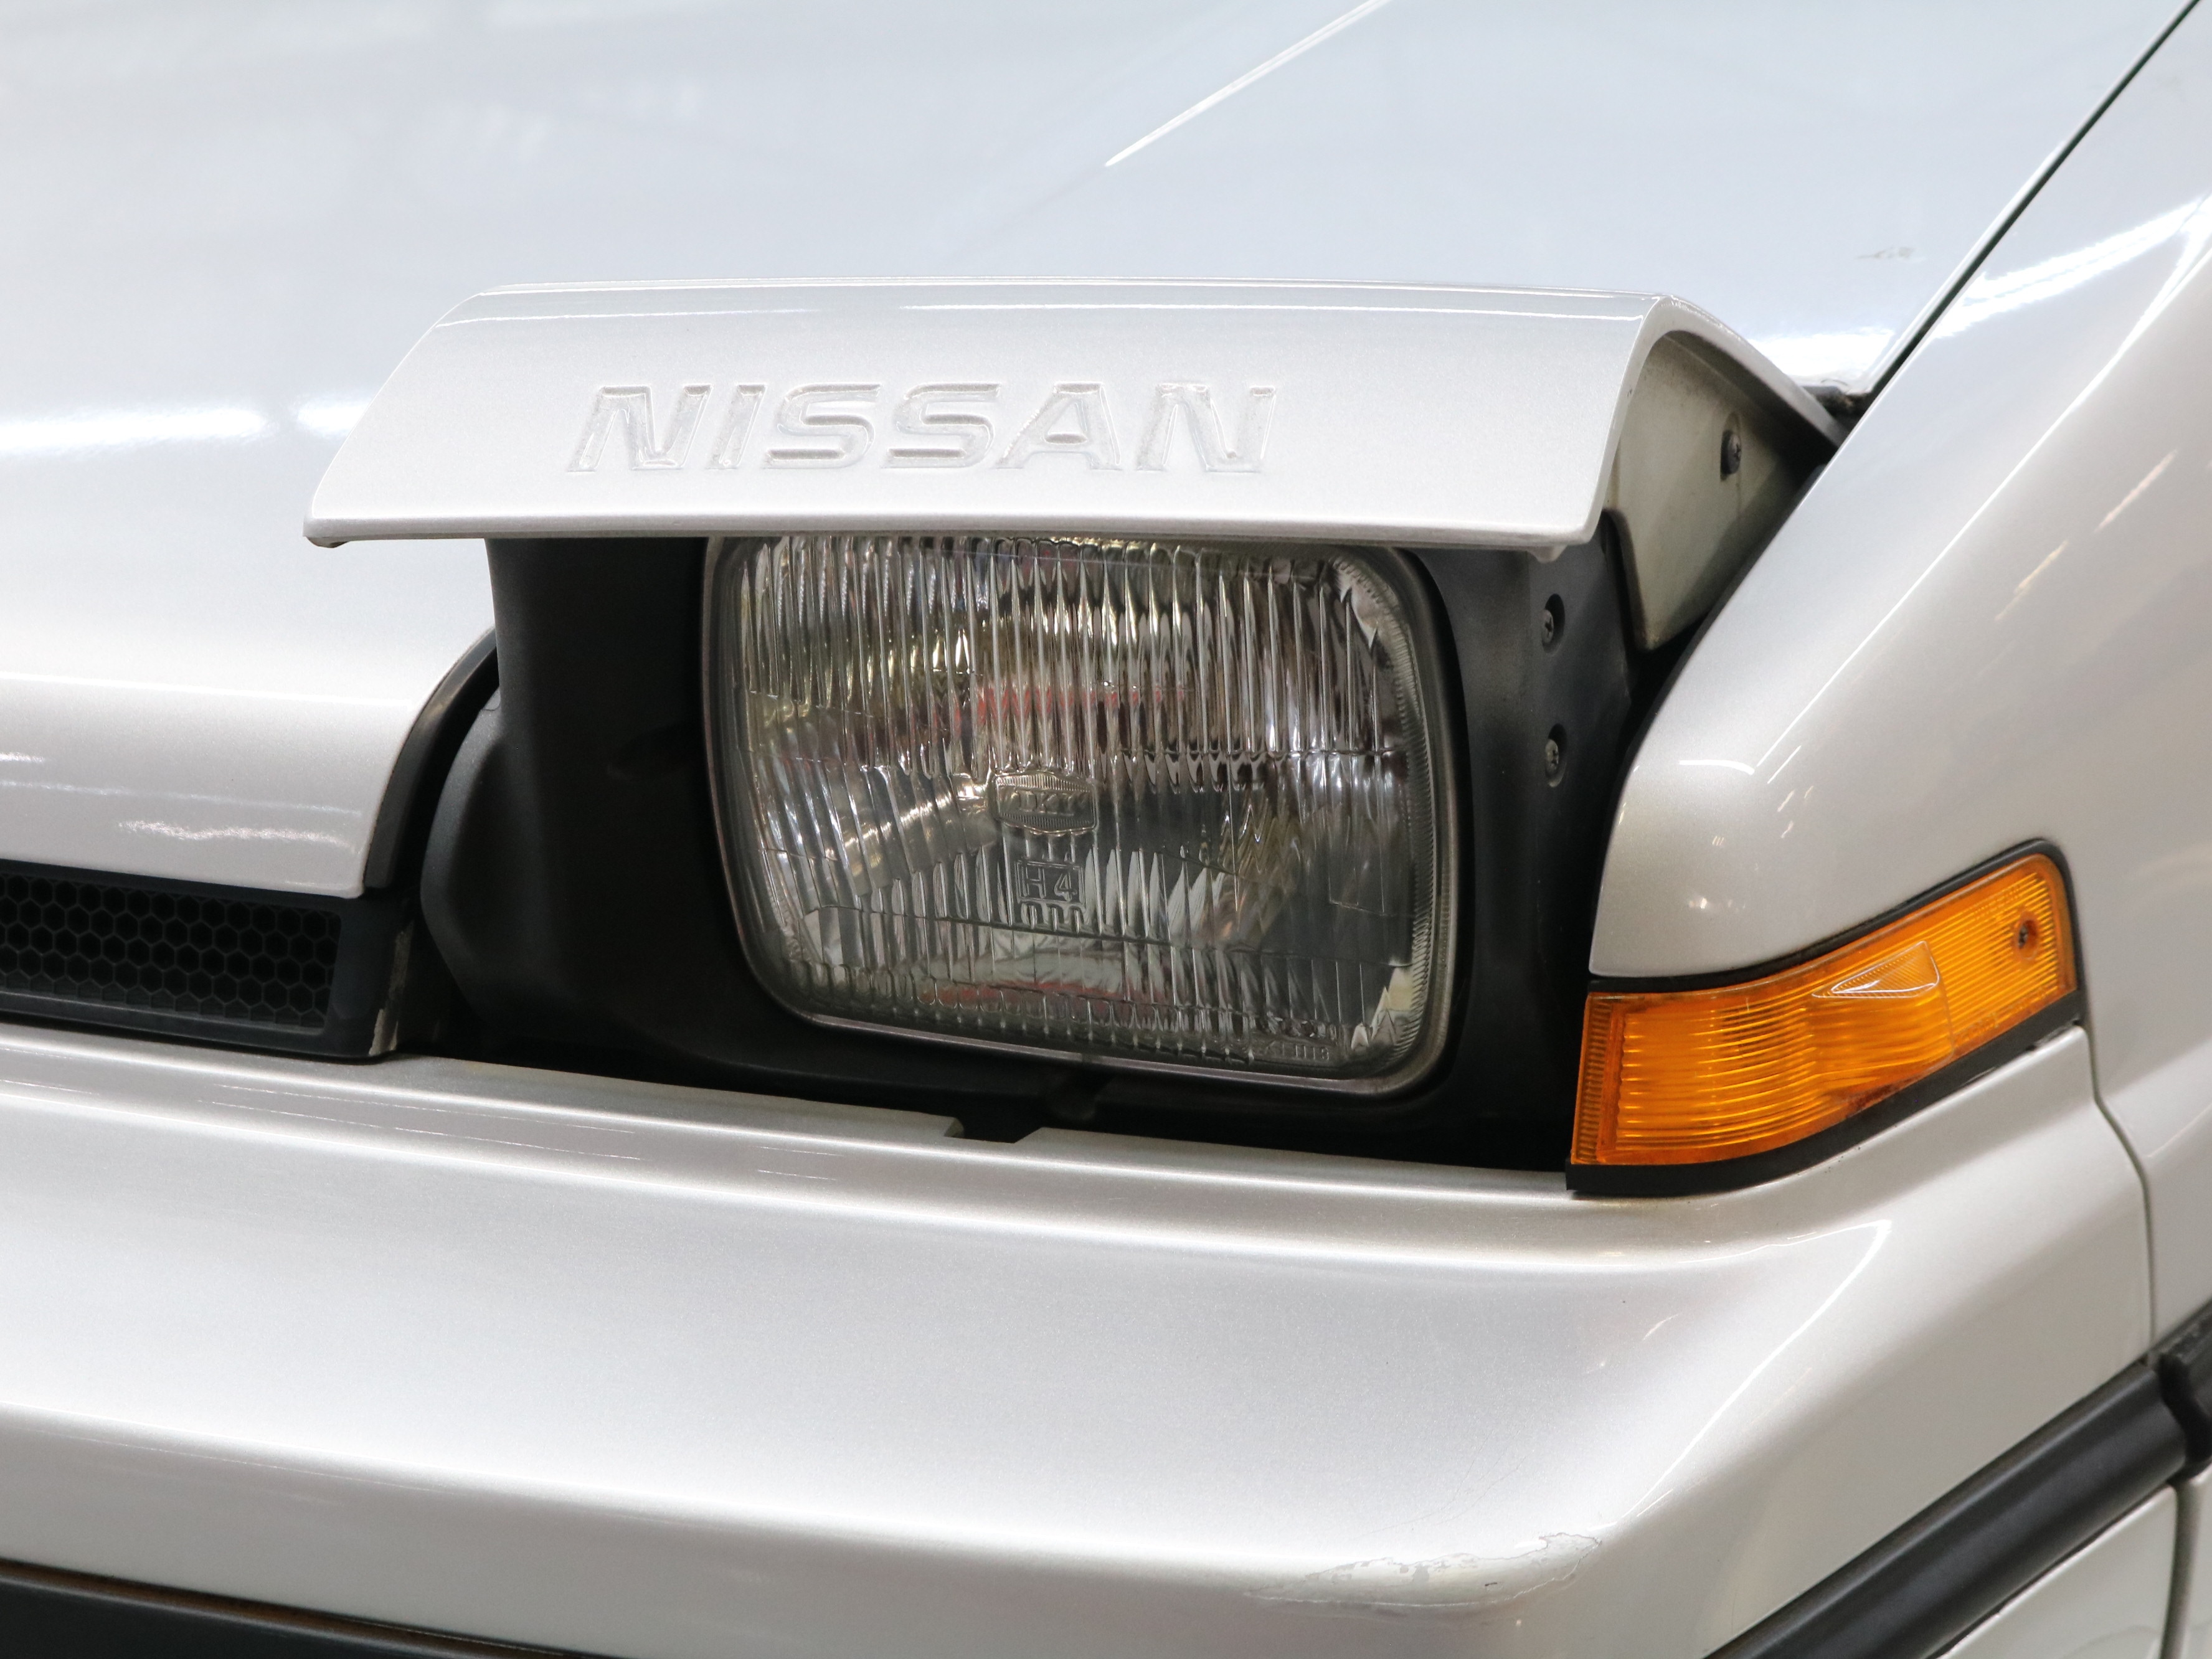 1988 Nissan EXA 46